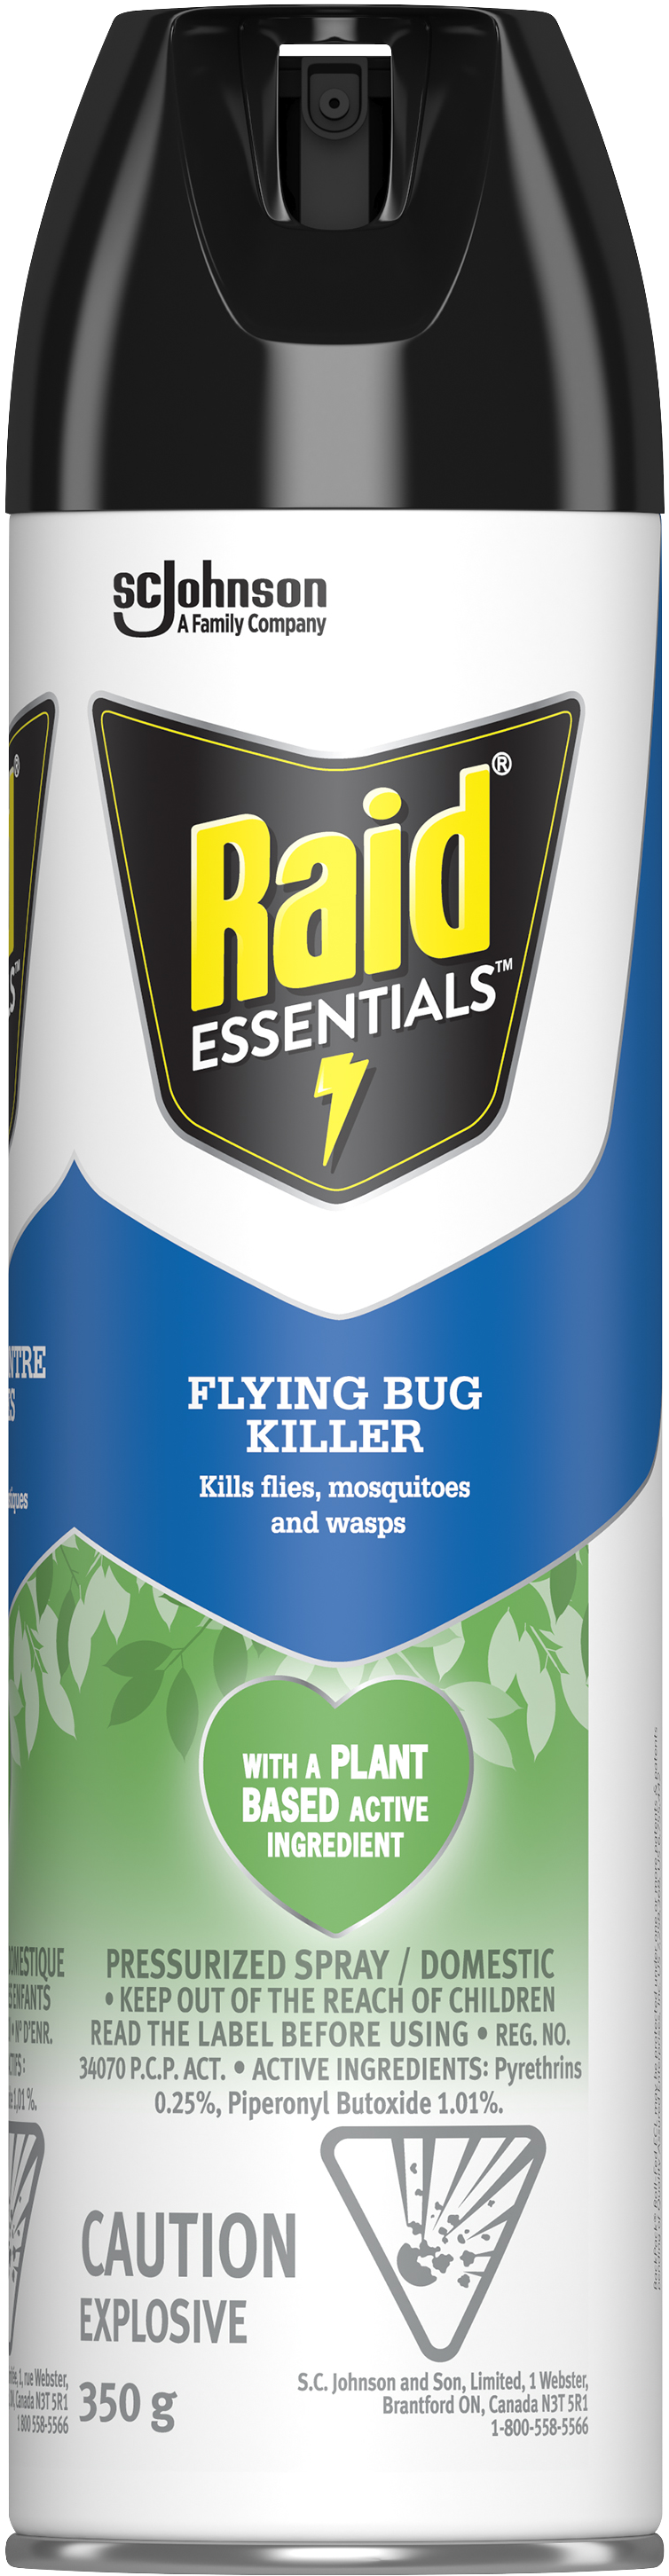 Raid Essentials Flying Bug Killer Pressurized Spray 350g - Quecan